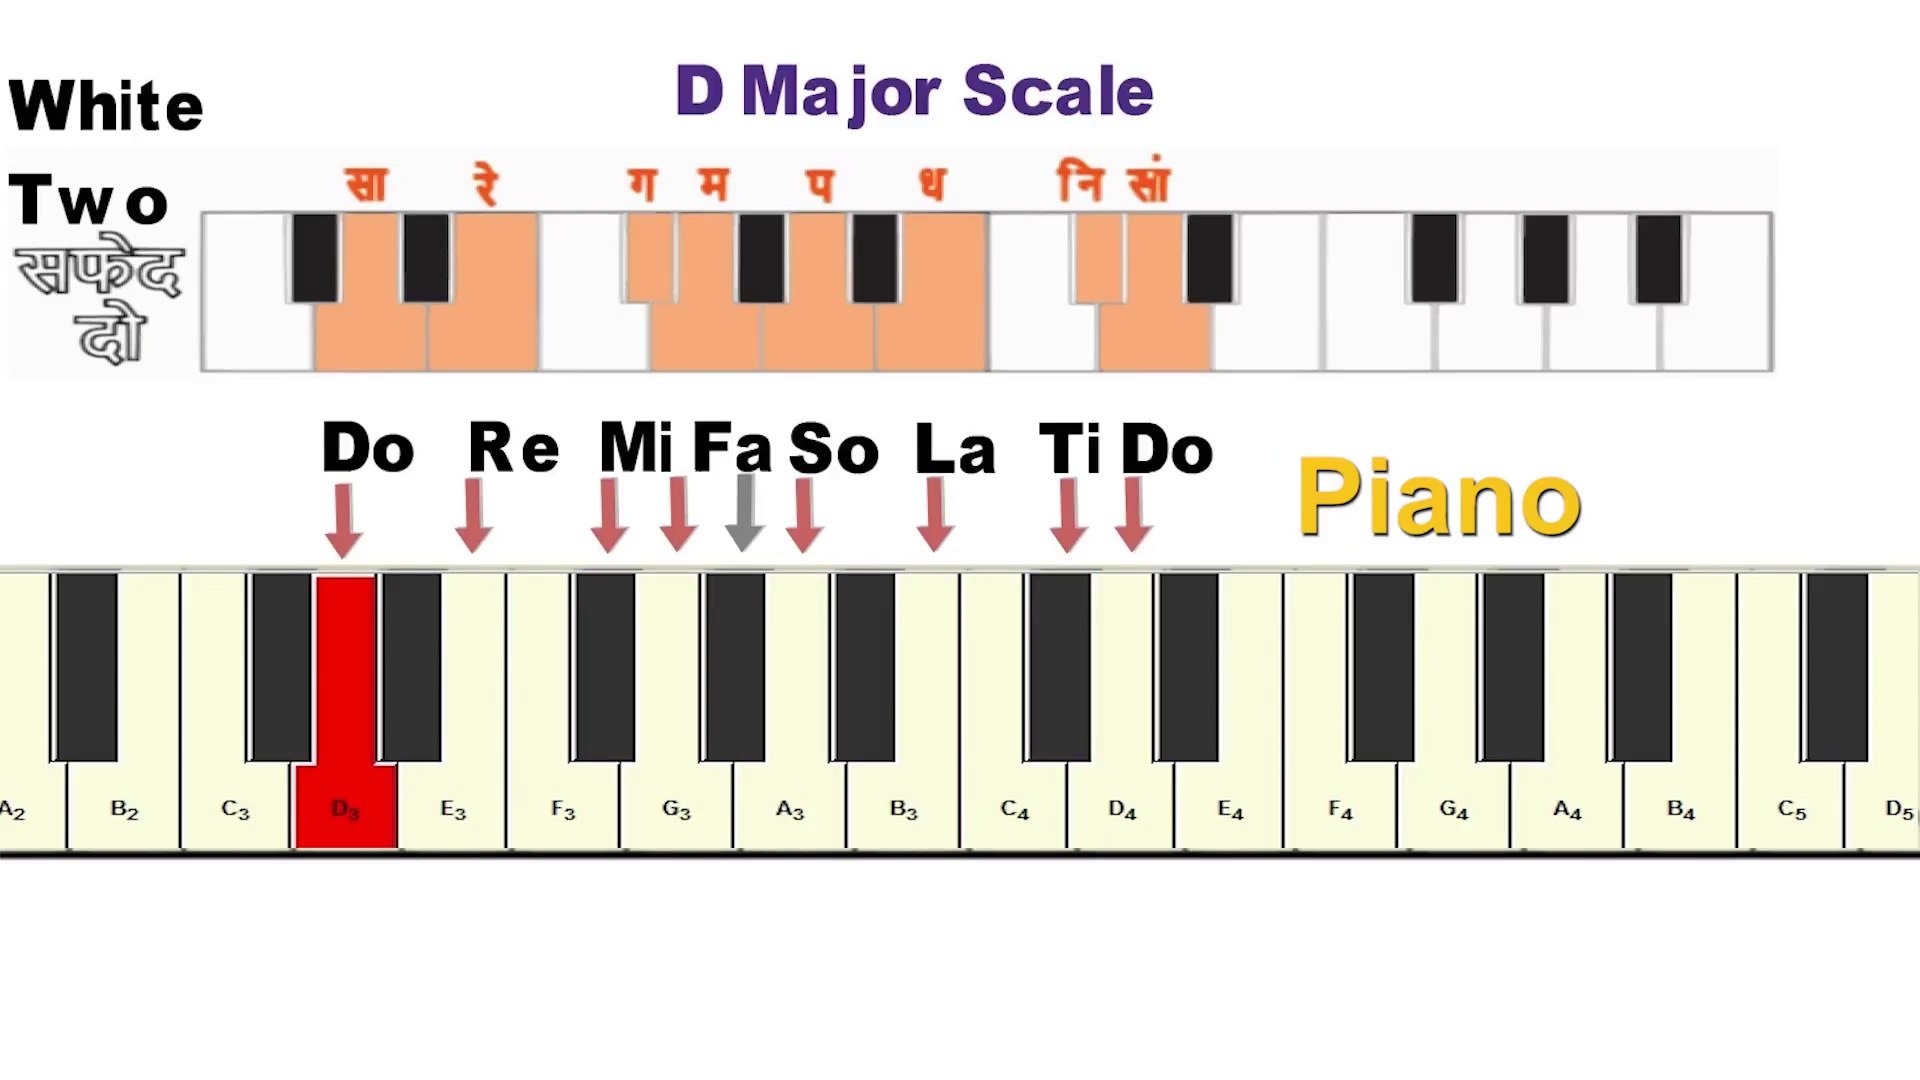 Ep 3 Best Way To Play Sa Re Ga Ma Pa Dha Ni Sa Or Do Re Mi Fa So La Ti Do From Any Harmonium Piano Video Dailymotion